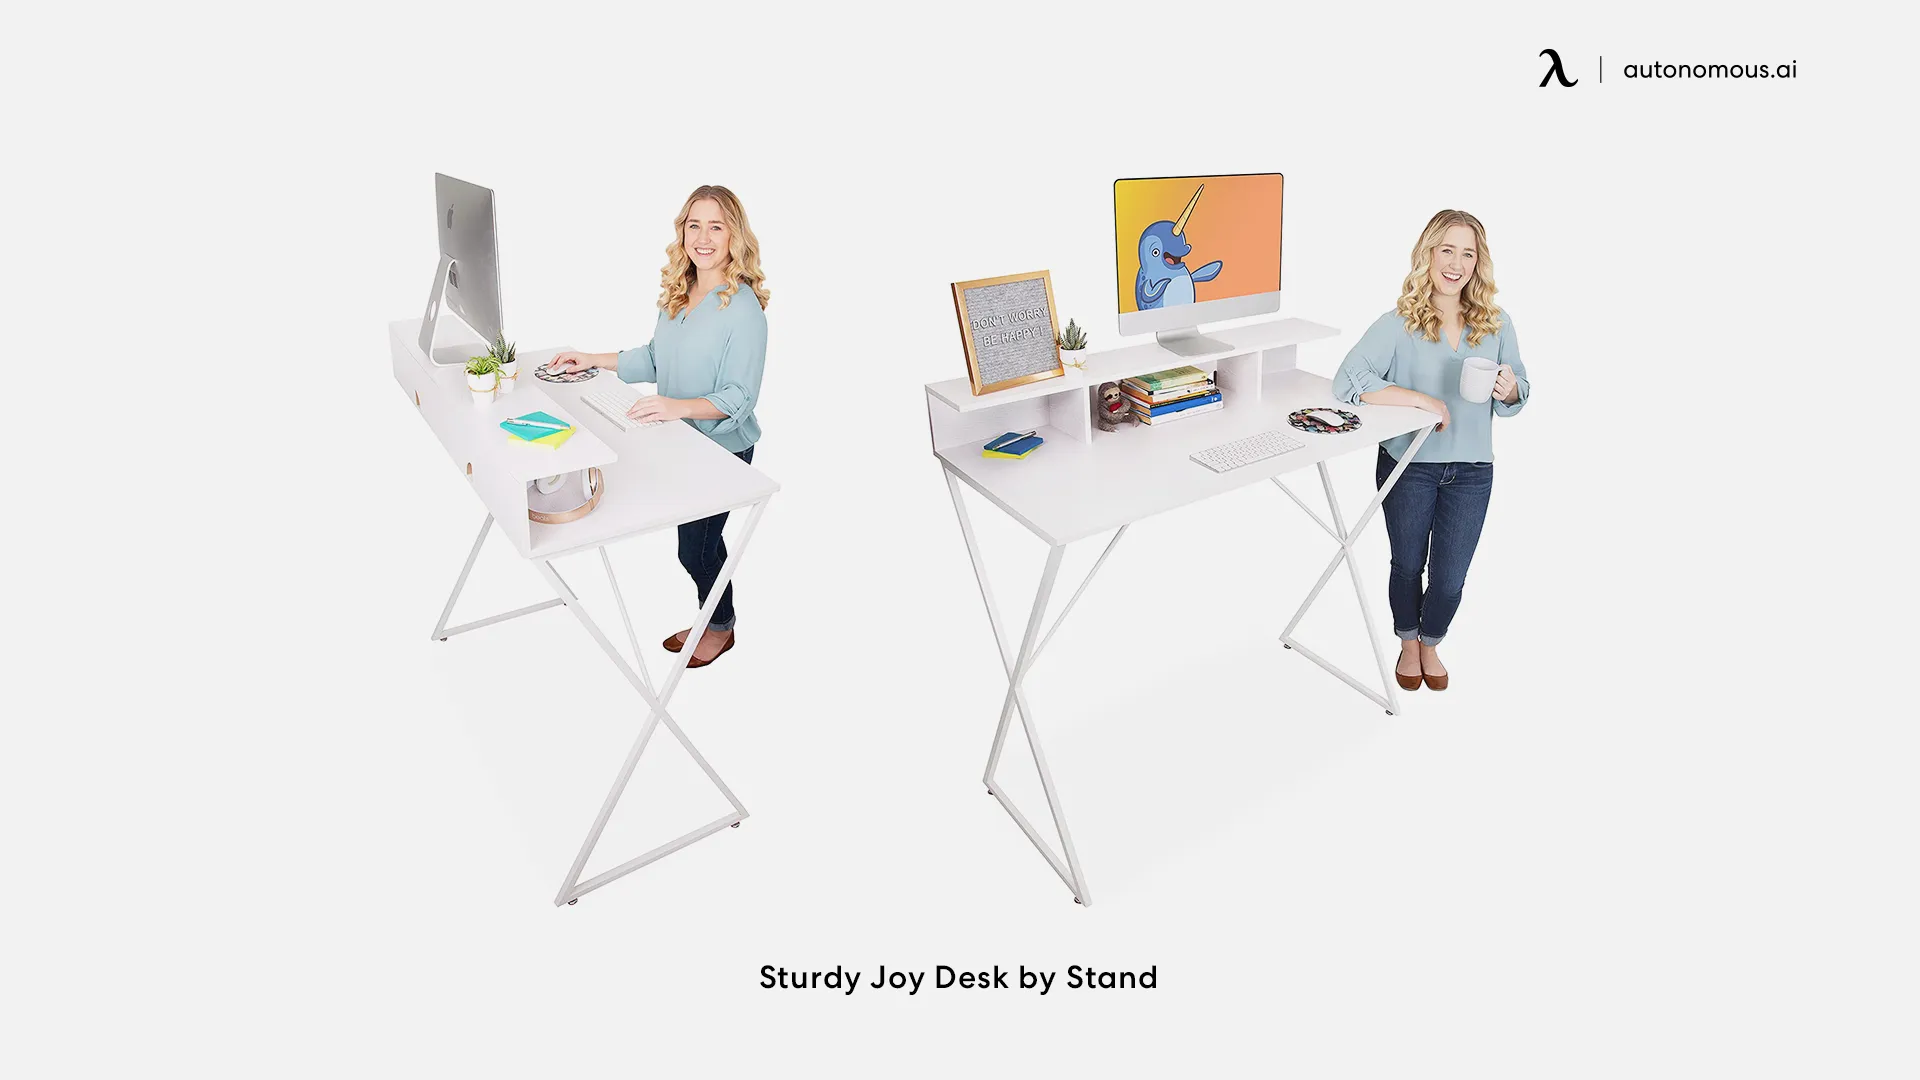 Sturdy Joy Desk by Stand